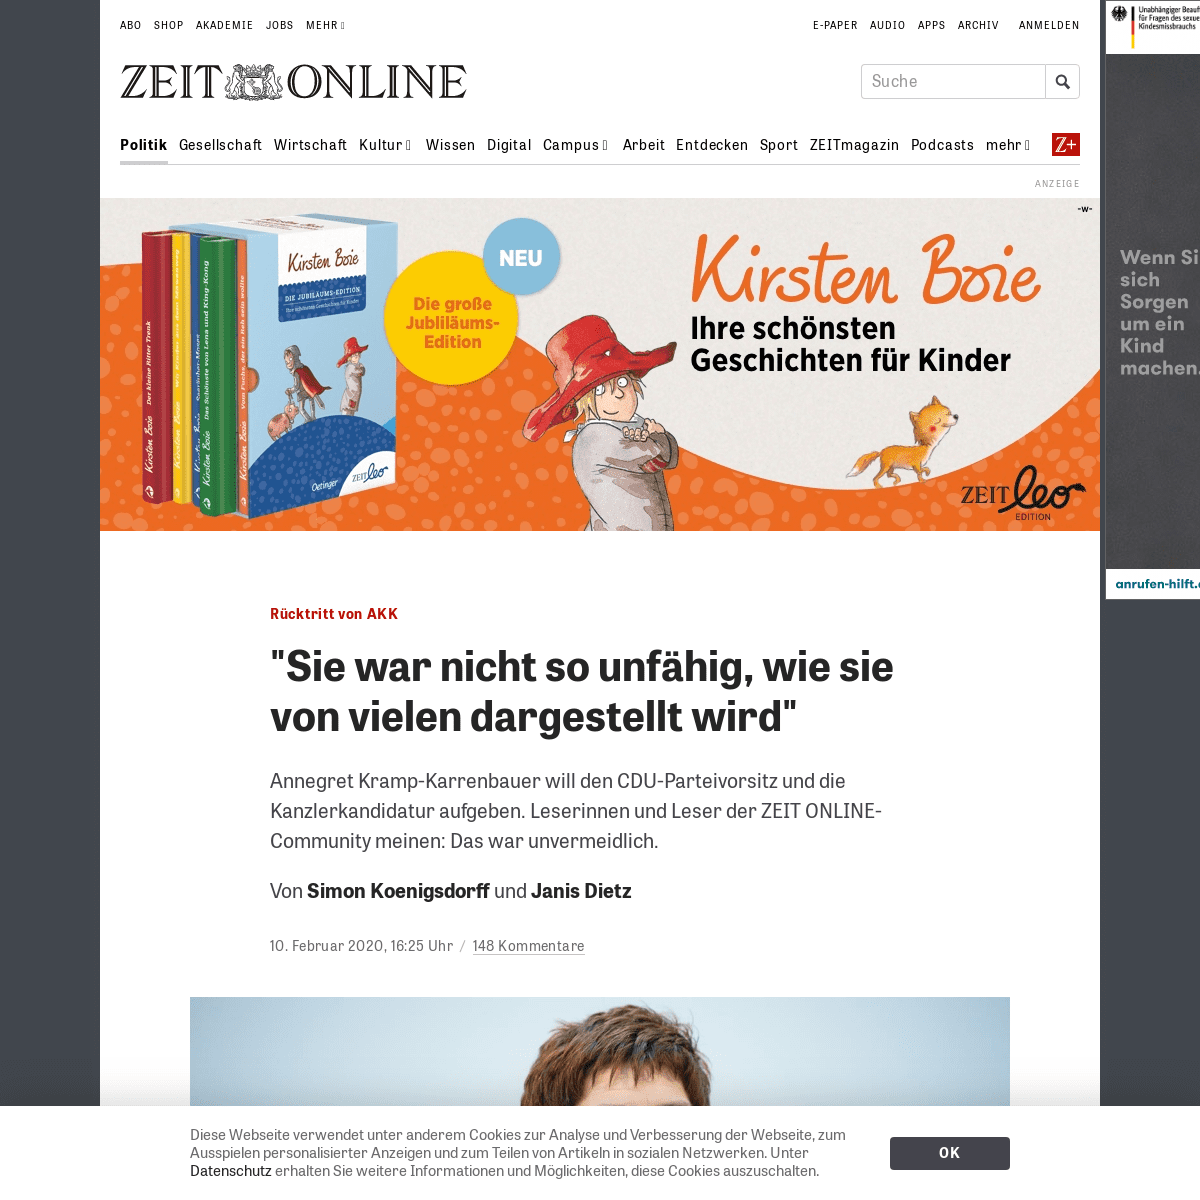 A complete backup of www.zeit.de/politik/deutschland/2020-02/ruecktritt-akk-cdu-parteivorsitz-kanzlerkandidatur-waehler-umfrage